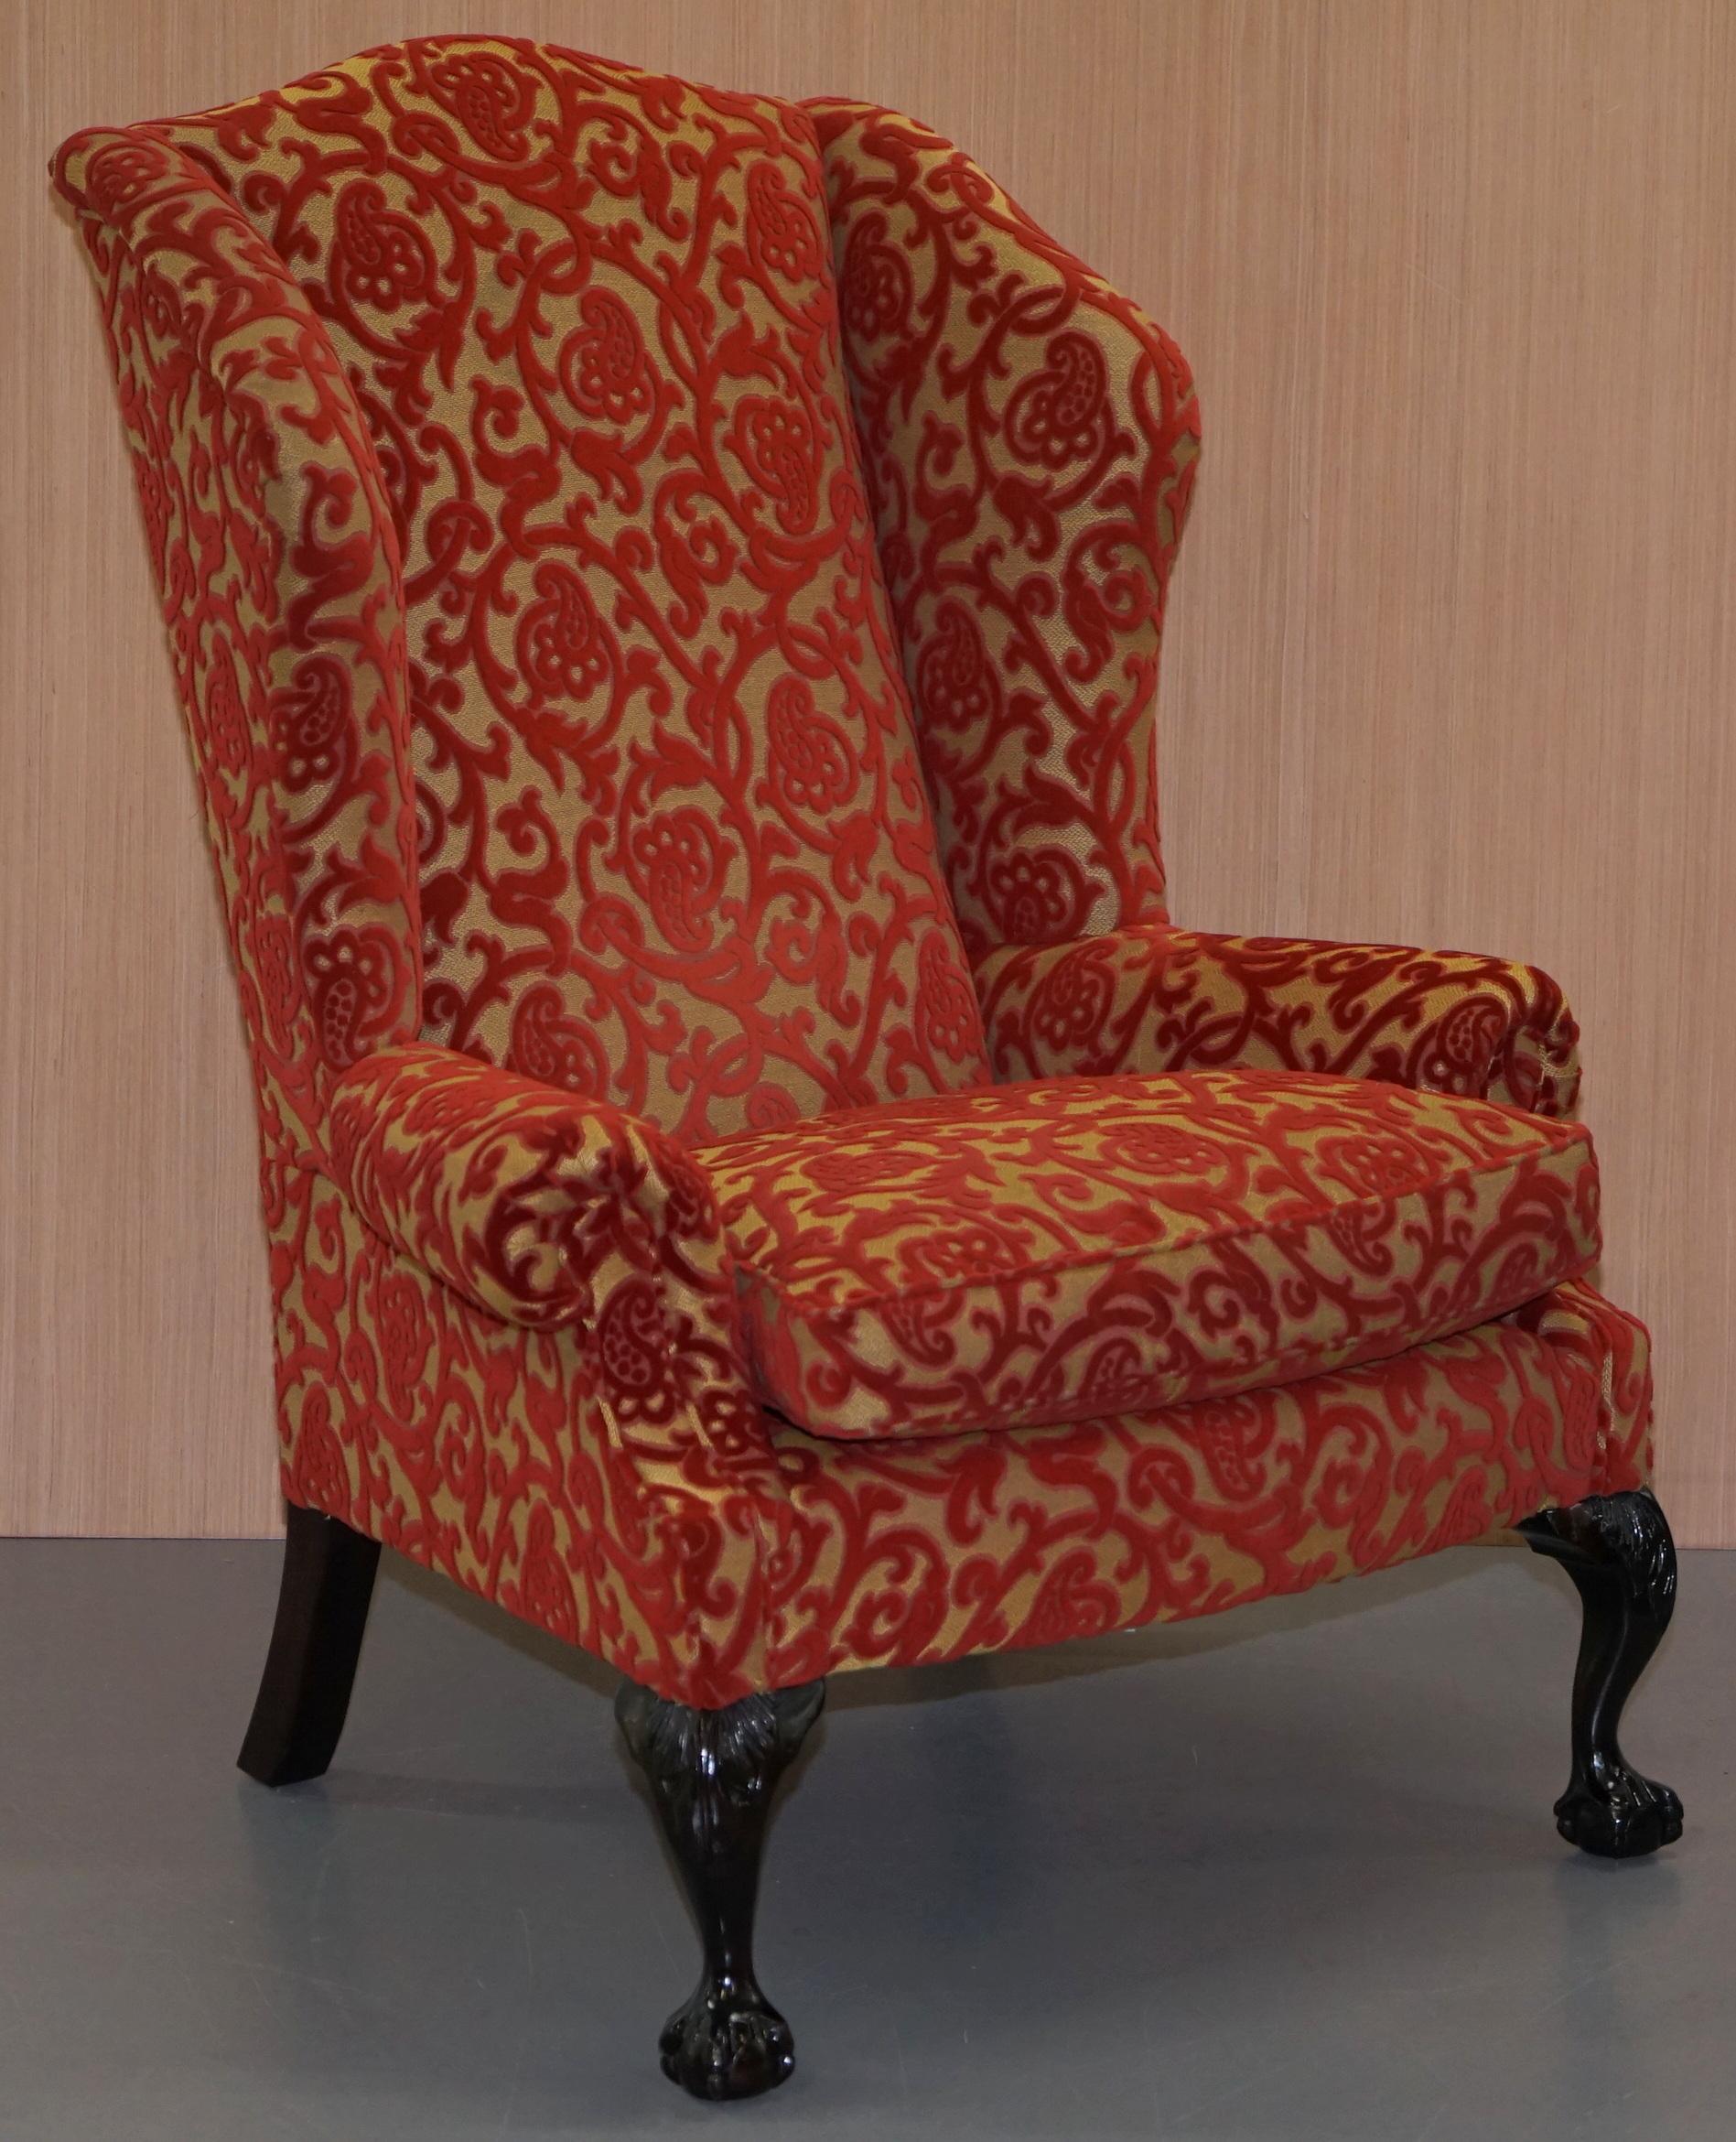 Nous sommes ravis d'offrir à la vente cette paire de fauteuils à oreilles George Smith Low Scroll Arm, d'un prix de vente conseillé de 9 378 £, avec tapisserie en damas.

Une très belle paire de grands fauteuils à dossier ailé, bien faits et